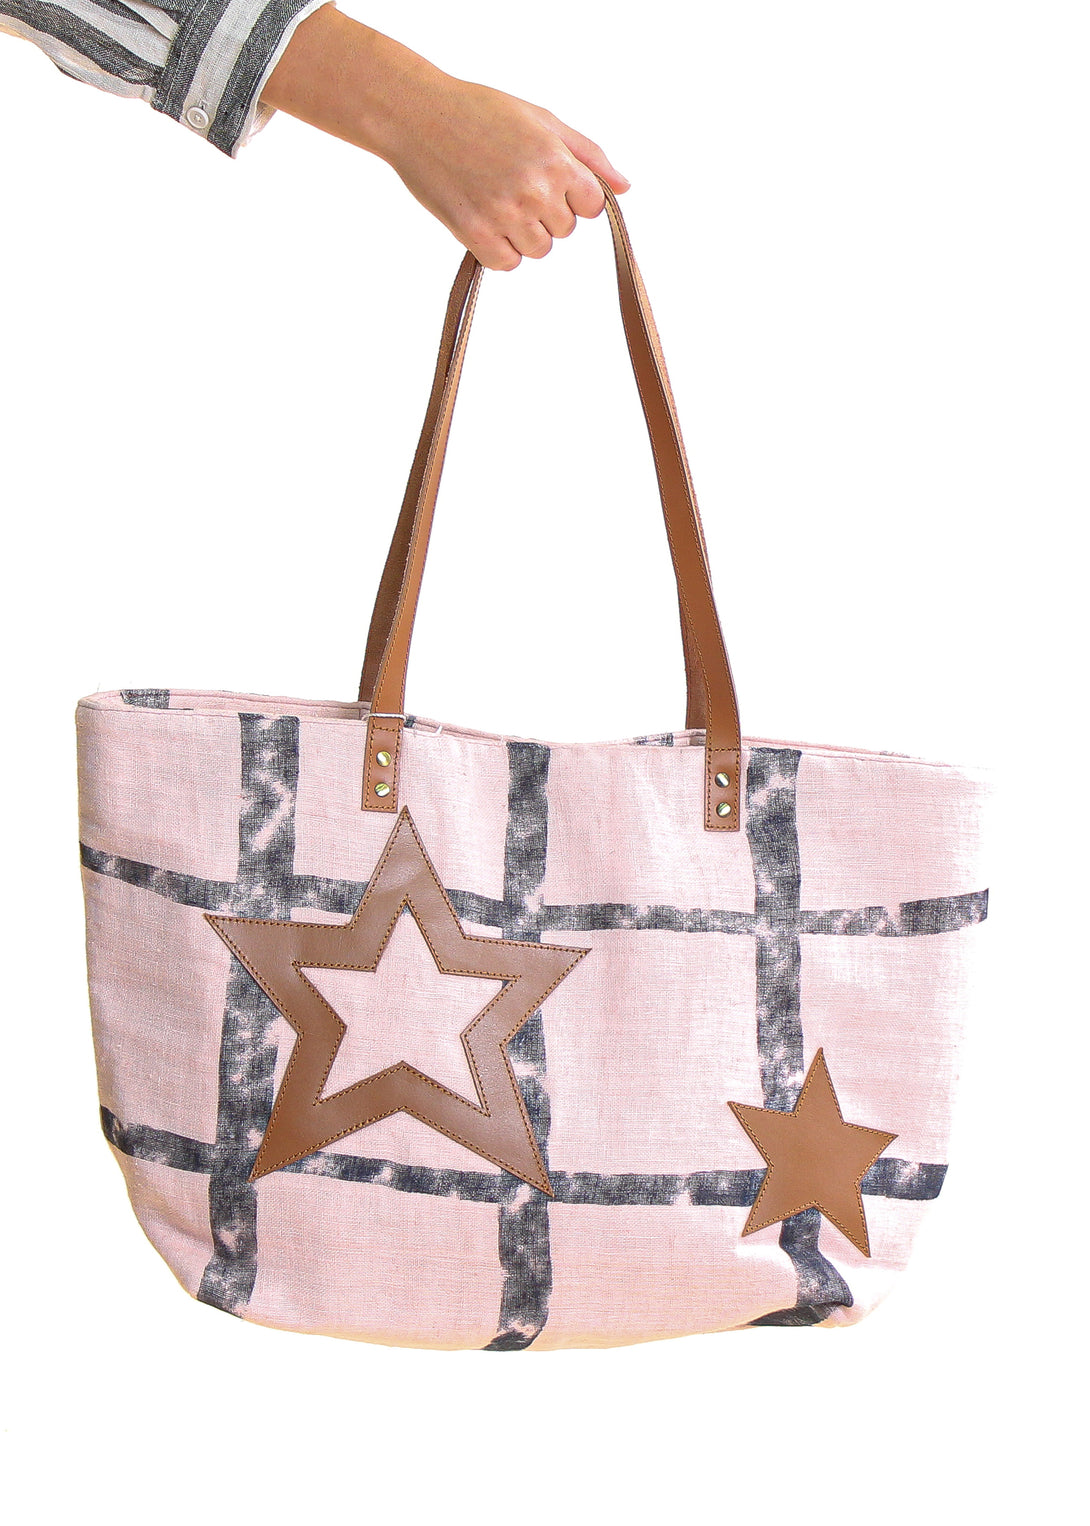 Anna Shopper Bag in Blush - Imagine Fashion